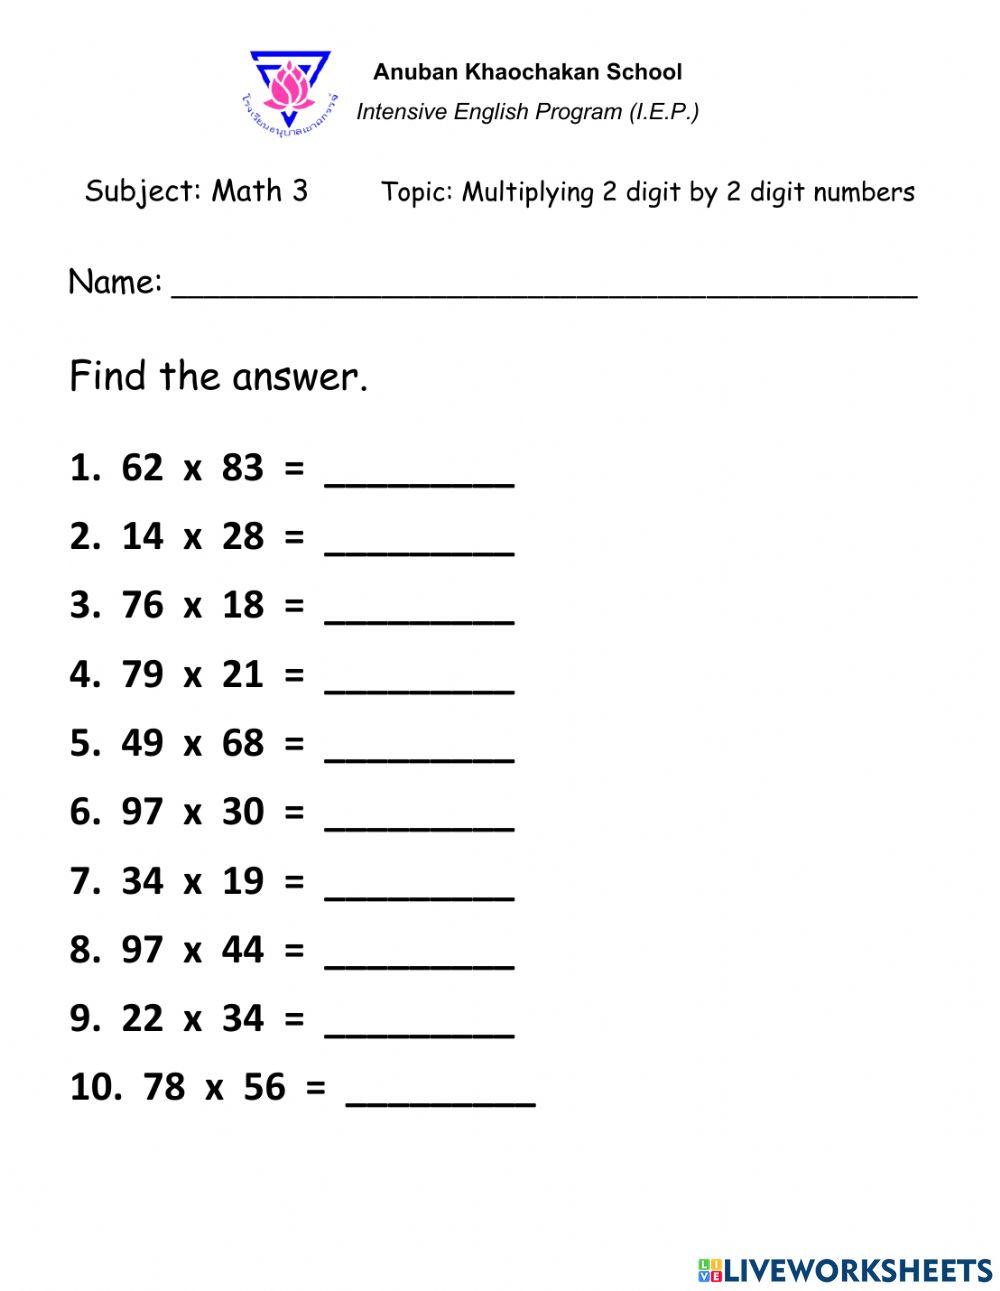 Multiplying 2 digit numbers by 2 digit numbers